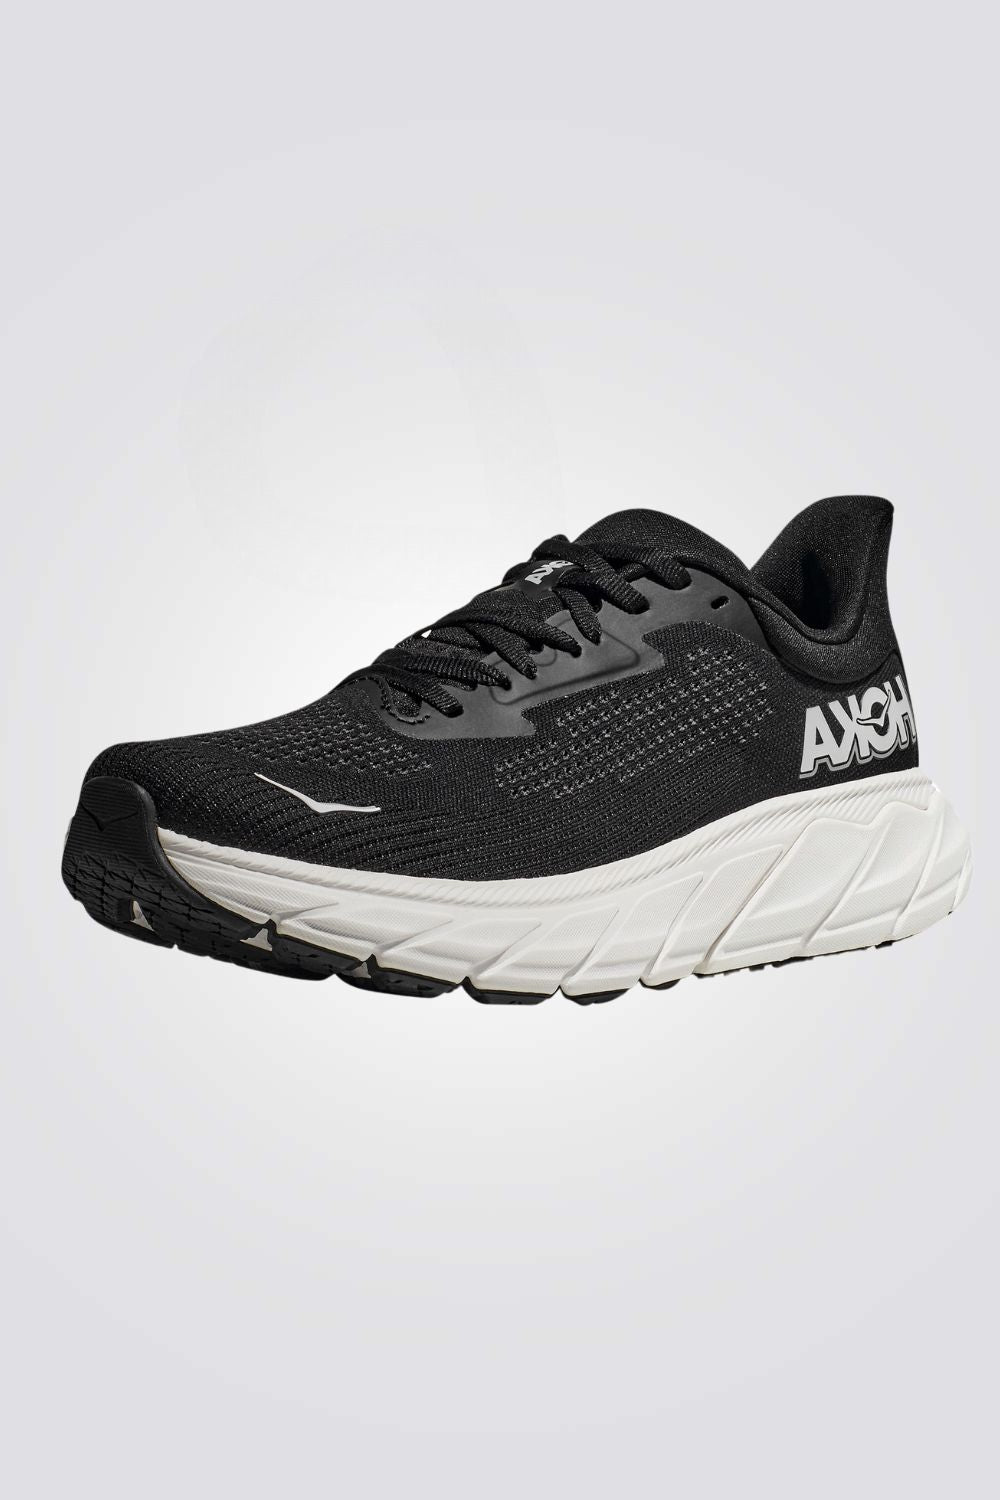 נעלי ספורט לגברים Arahi Wide 7 בצבע שחור ולבן